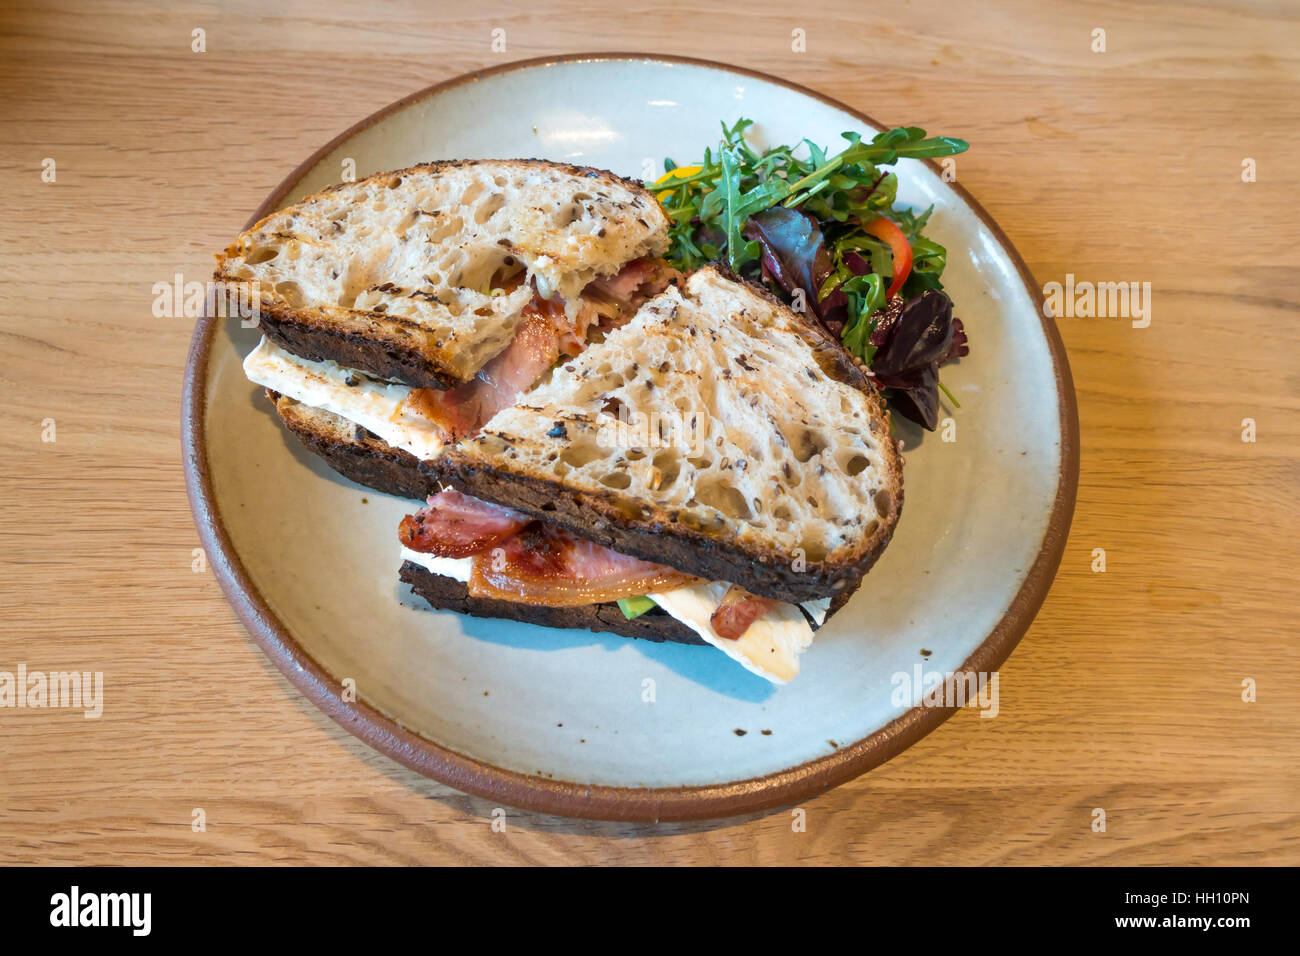 Le déjeuner snack-Bacon sandwich Avocat Brie sur pain au levain avec feuilles de salade Banque D'Images